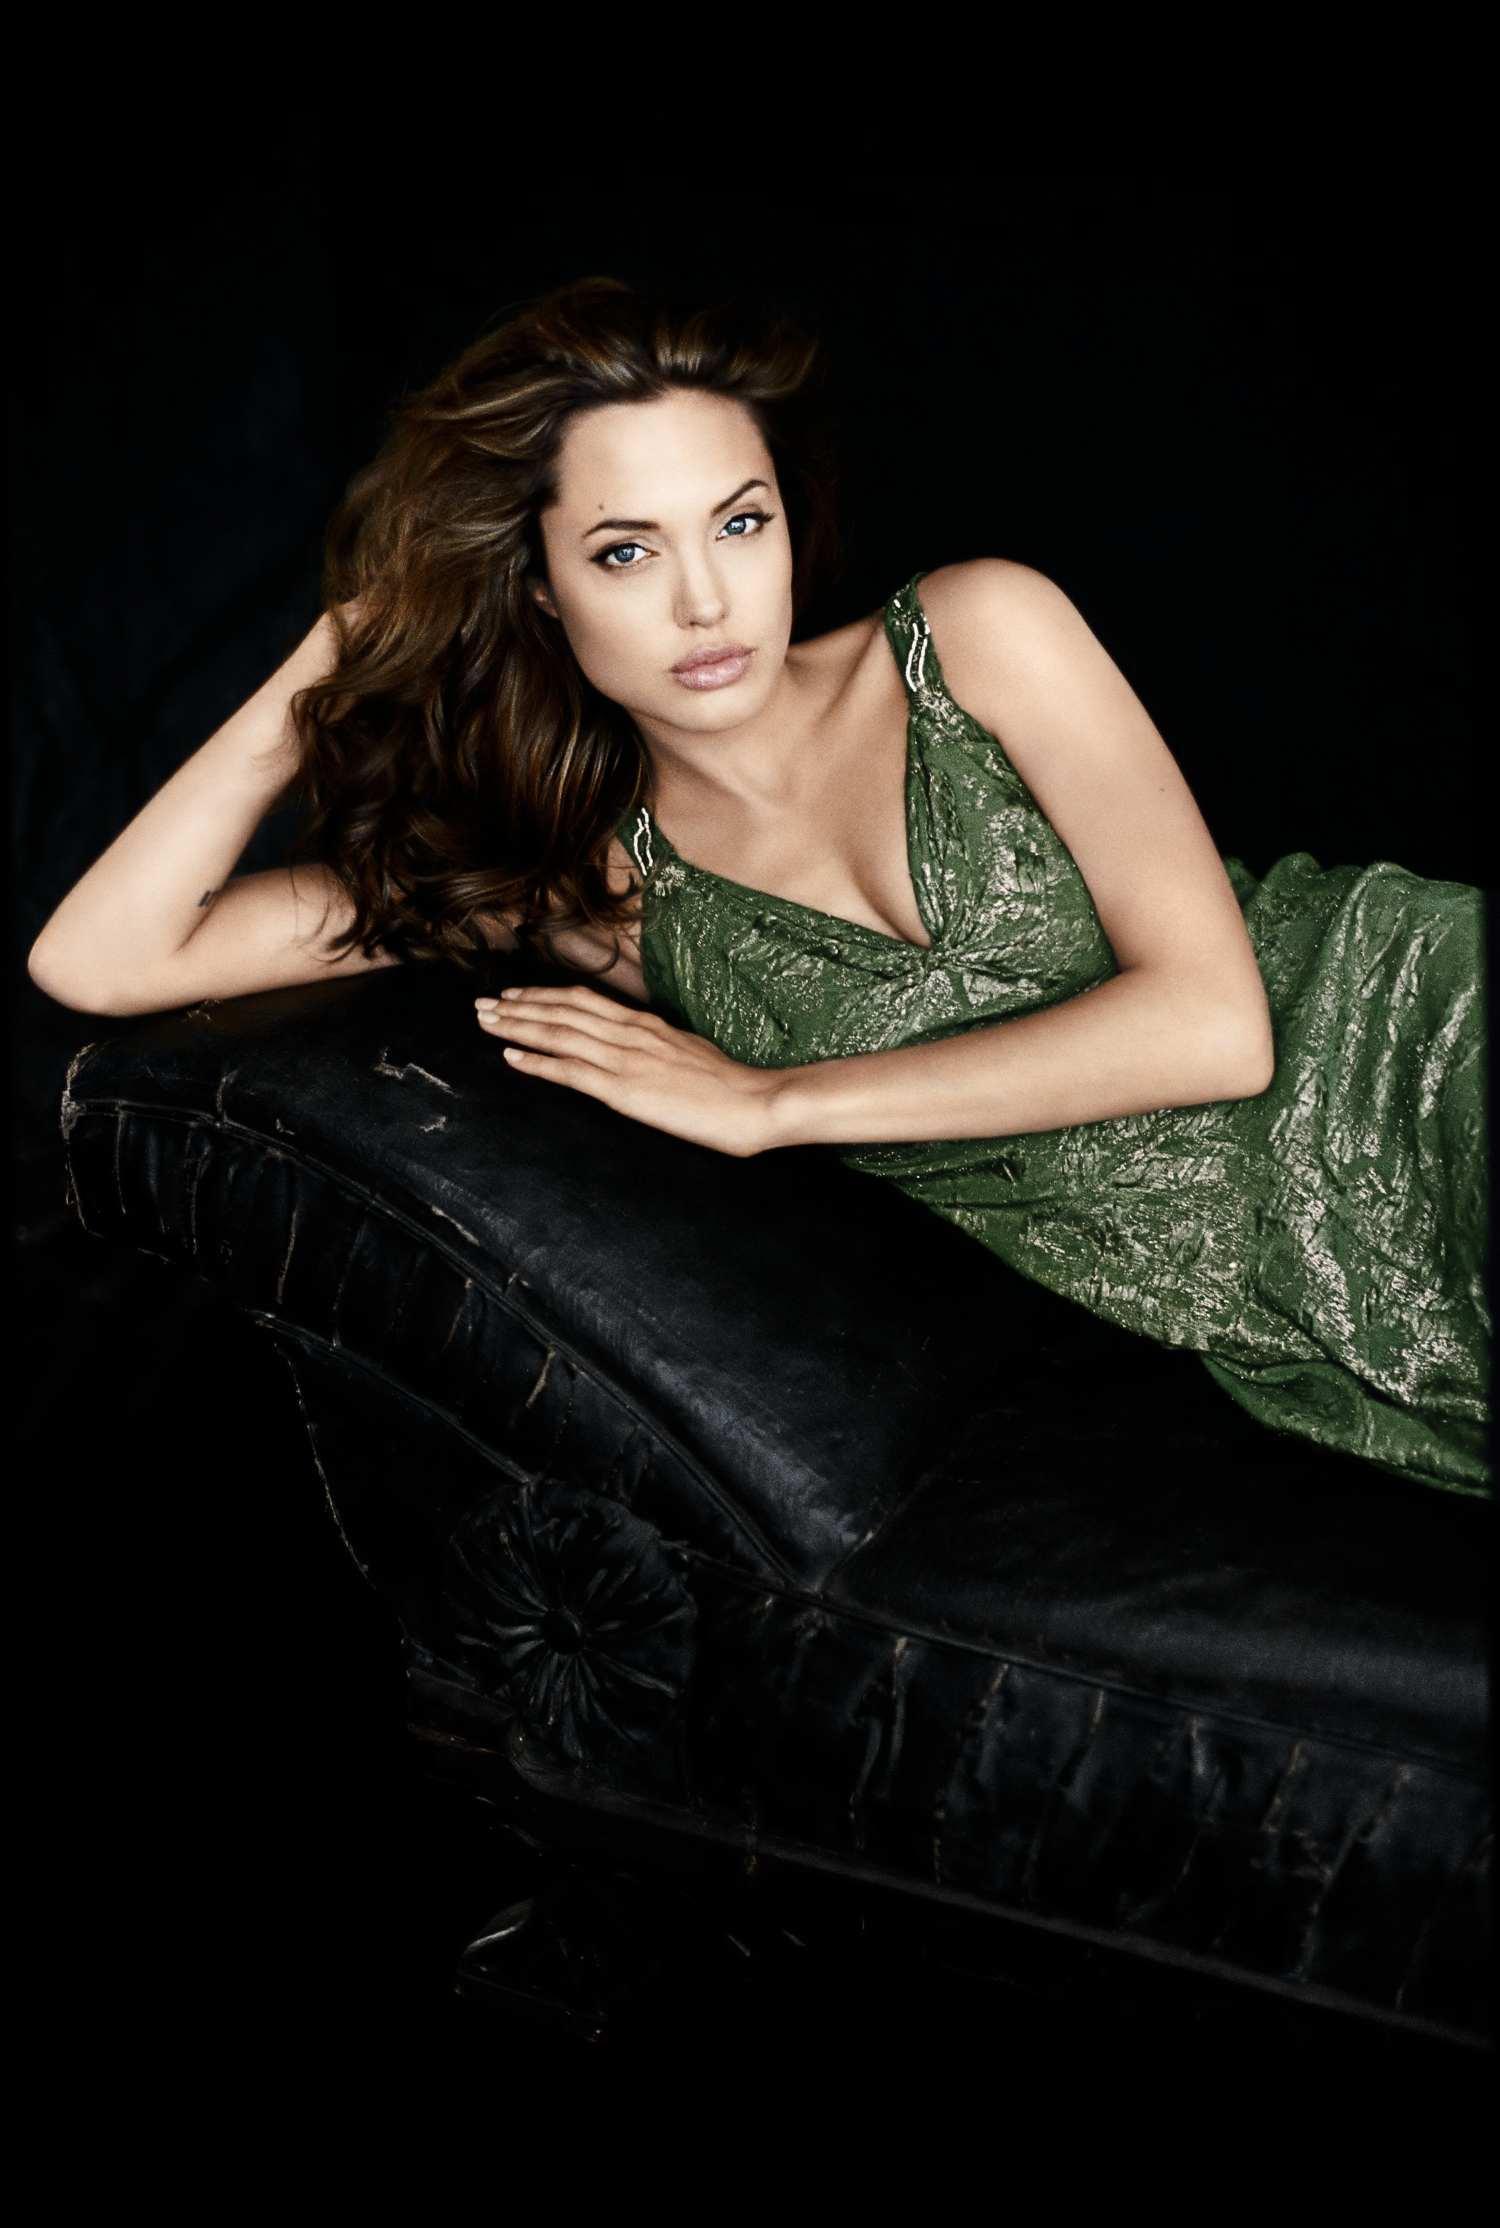 Angelina Jolie wallpaper №7944.